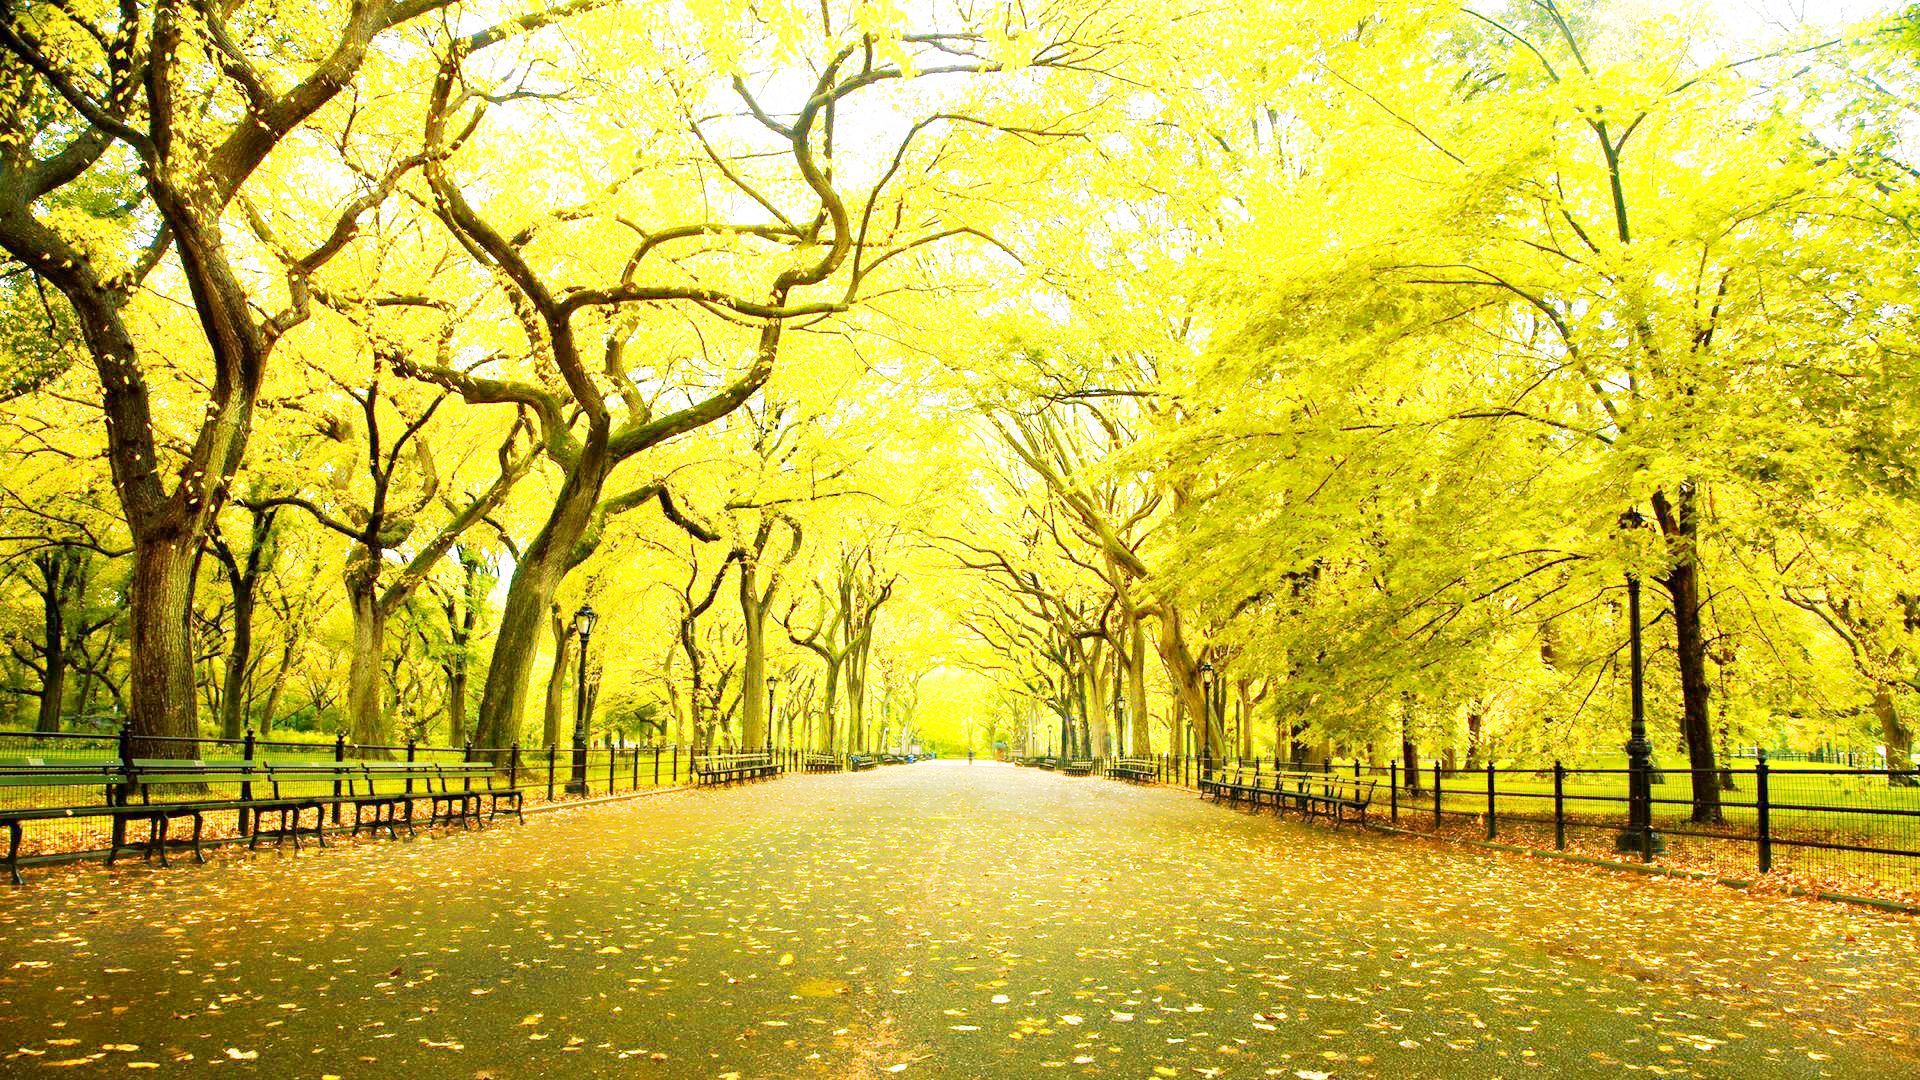 美しい壁紙フルhd 1080pの壁紙,自然の風景,木,自然,黄,緑